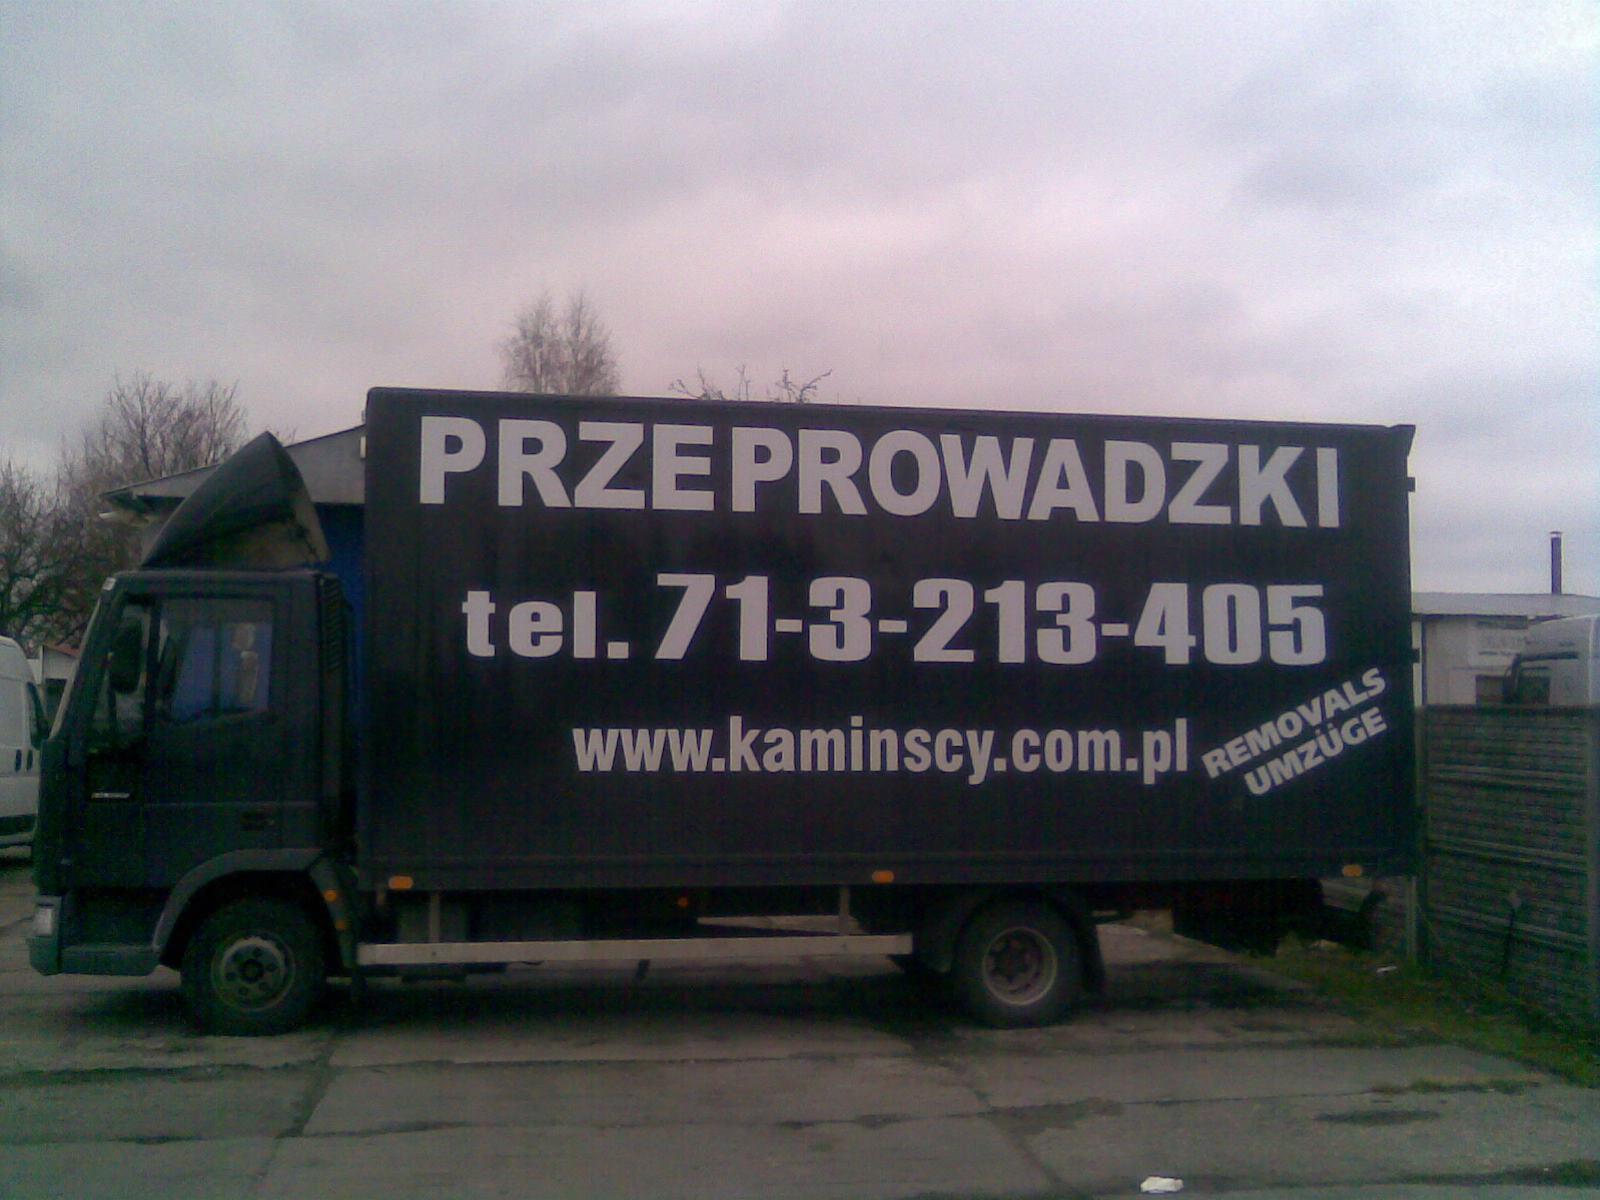 PRZEPRWADZKI Poznan ponad 25 lat doswiadczenia, Poznań, wielkopolskie